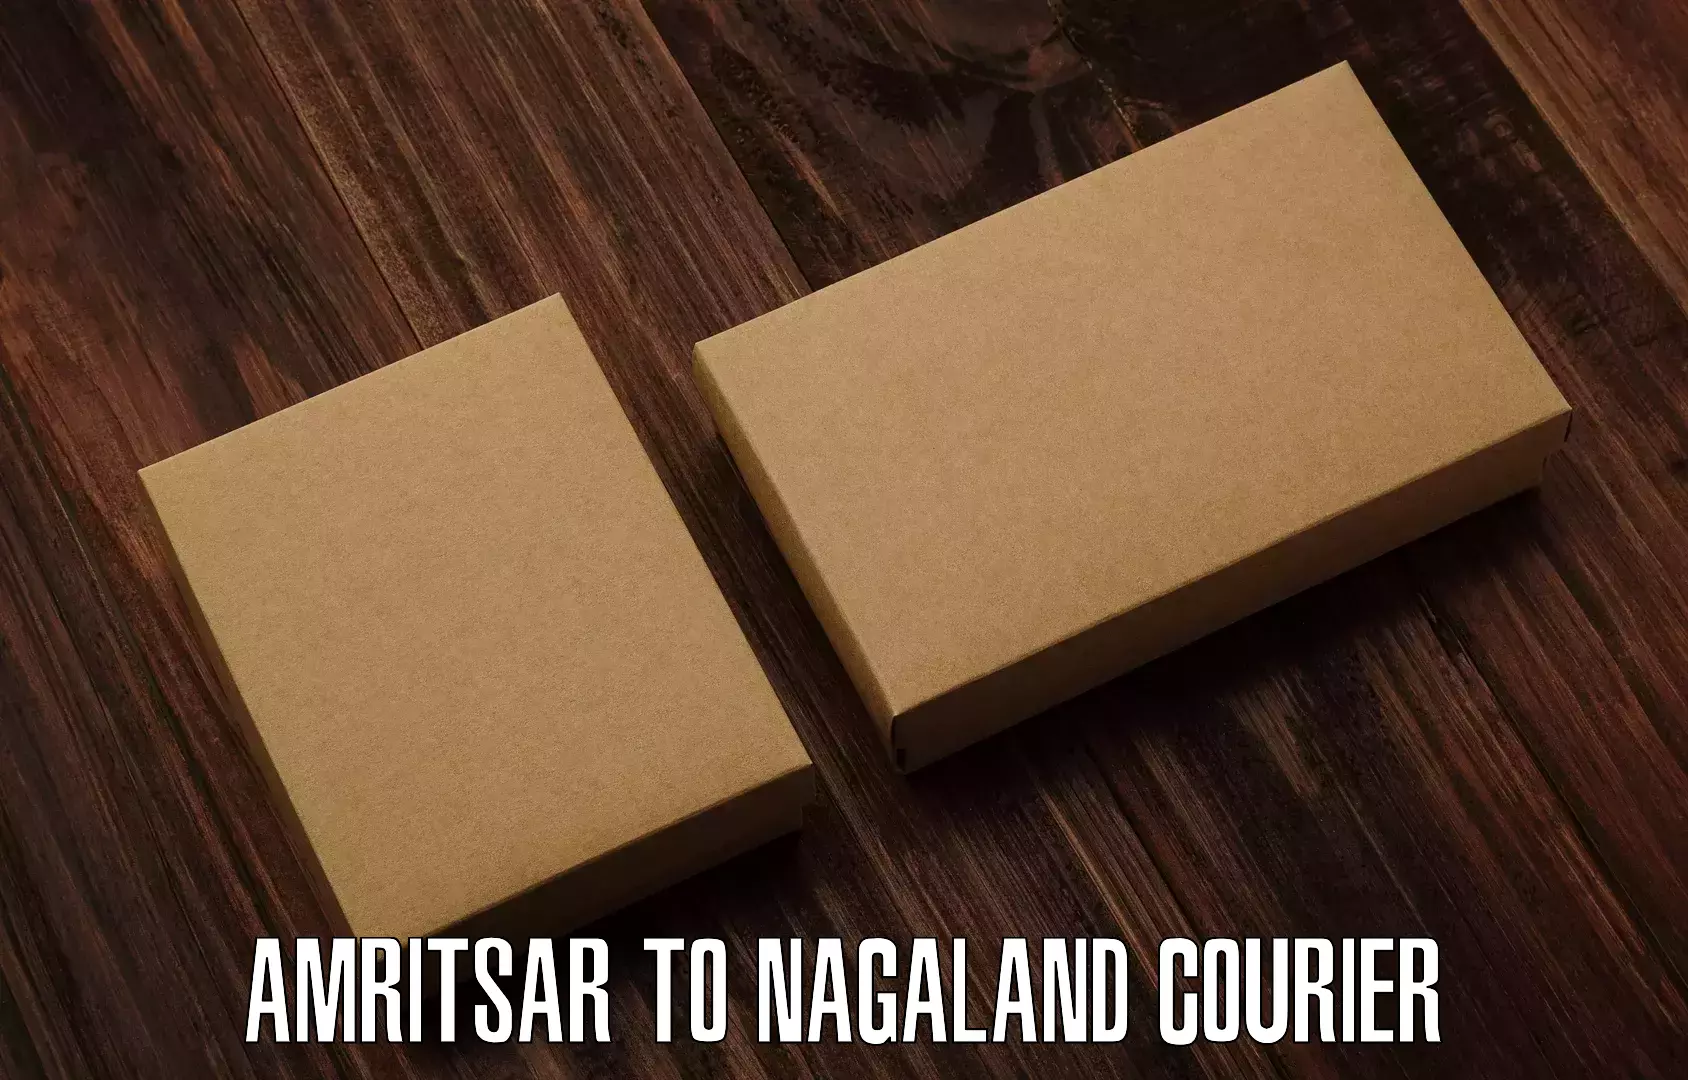 Shipping and handling in Amritsar to Nagaland